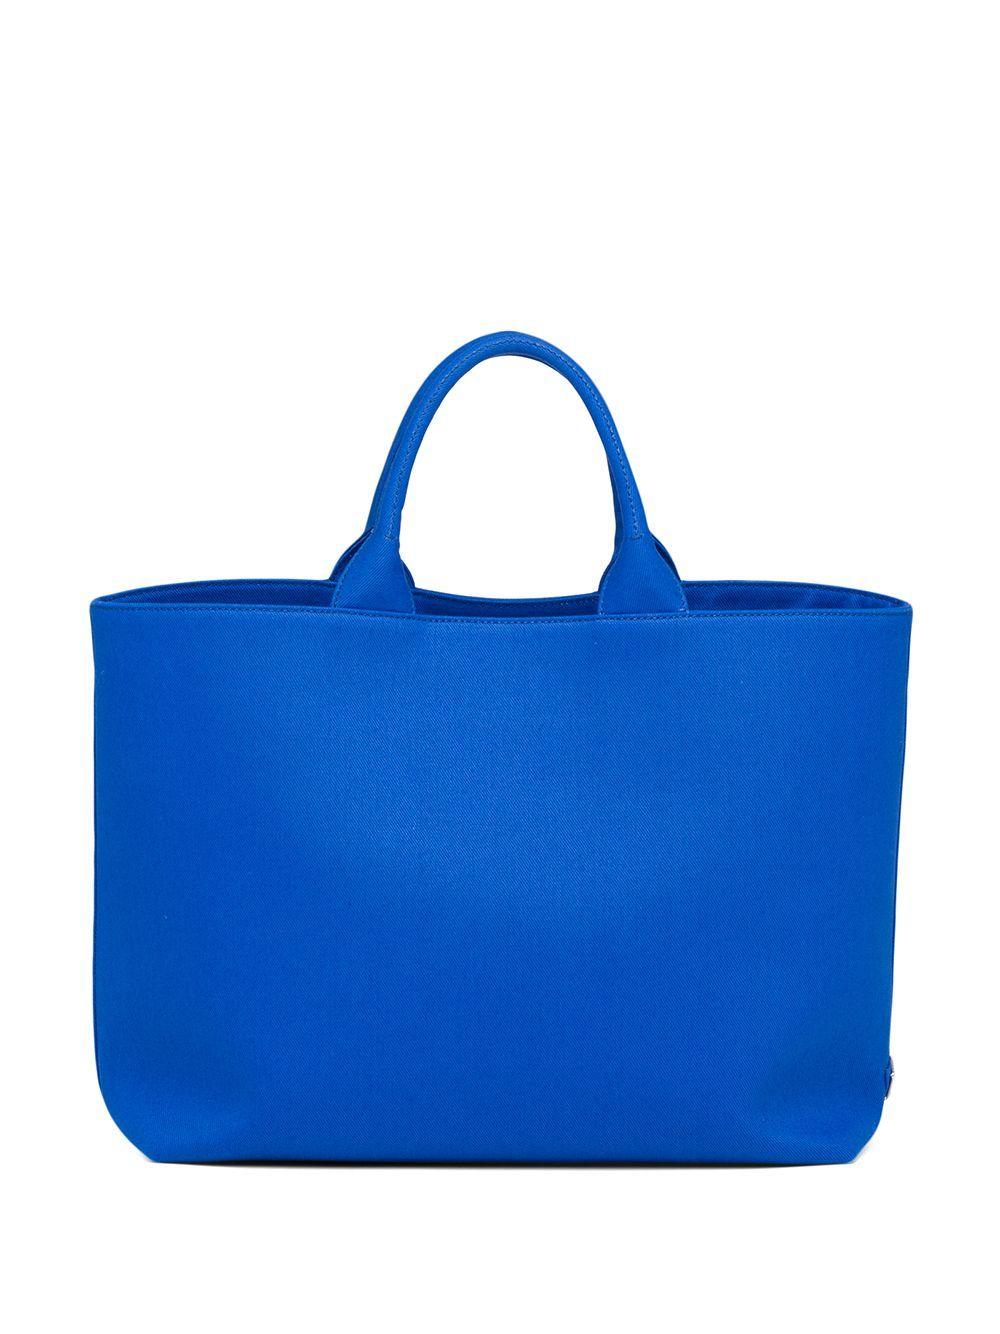 cobalt blue prada blue bag